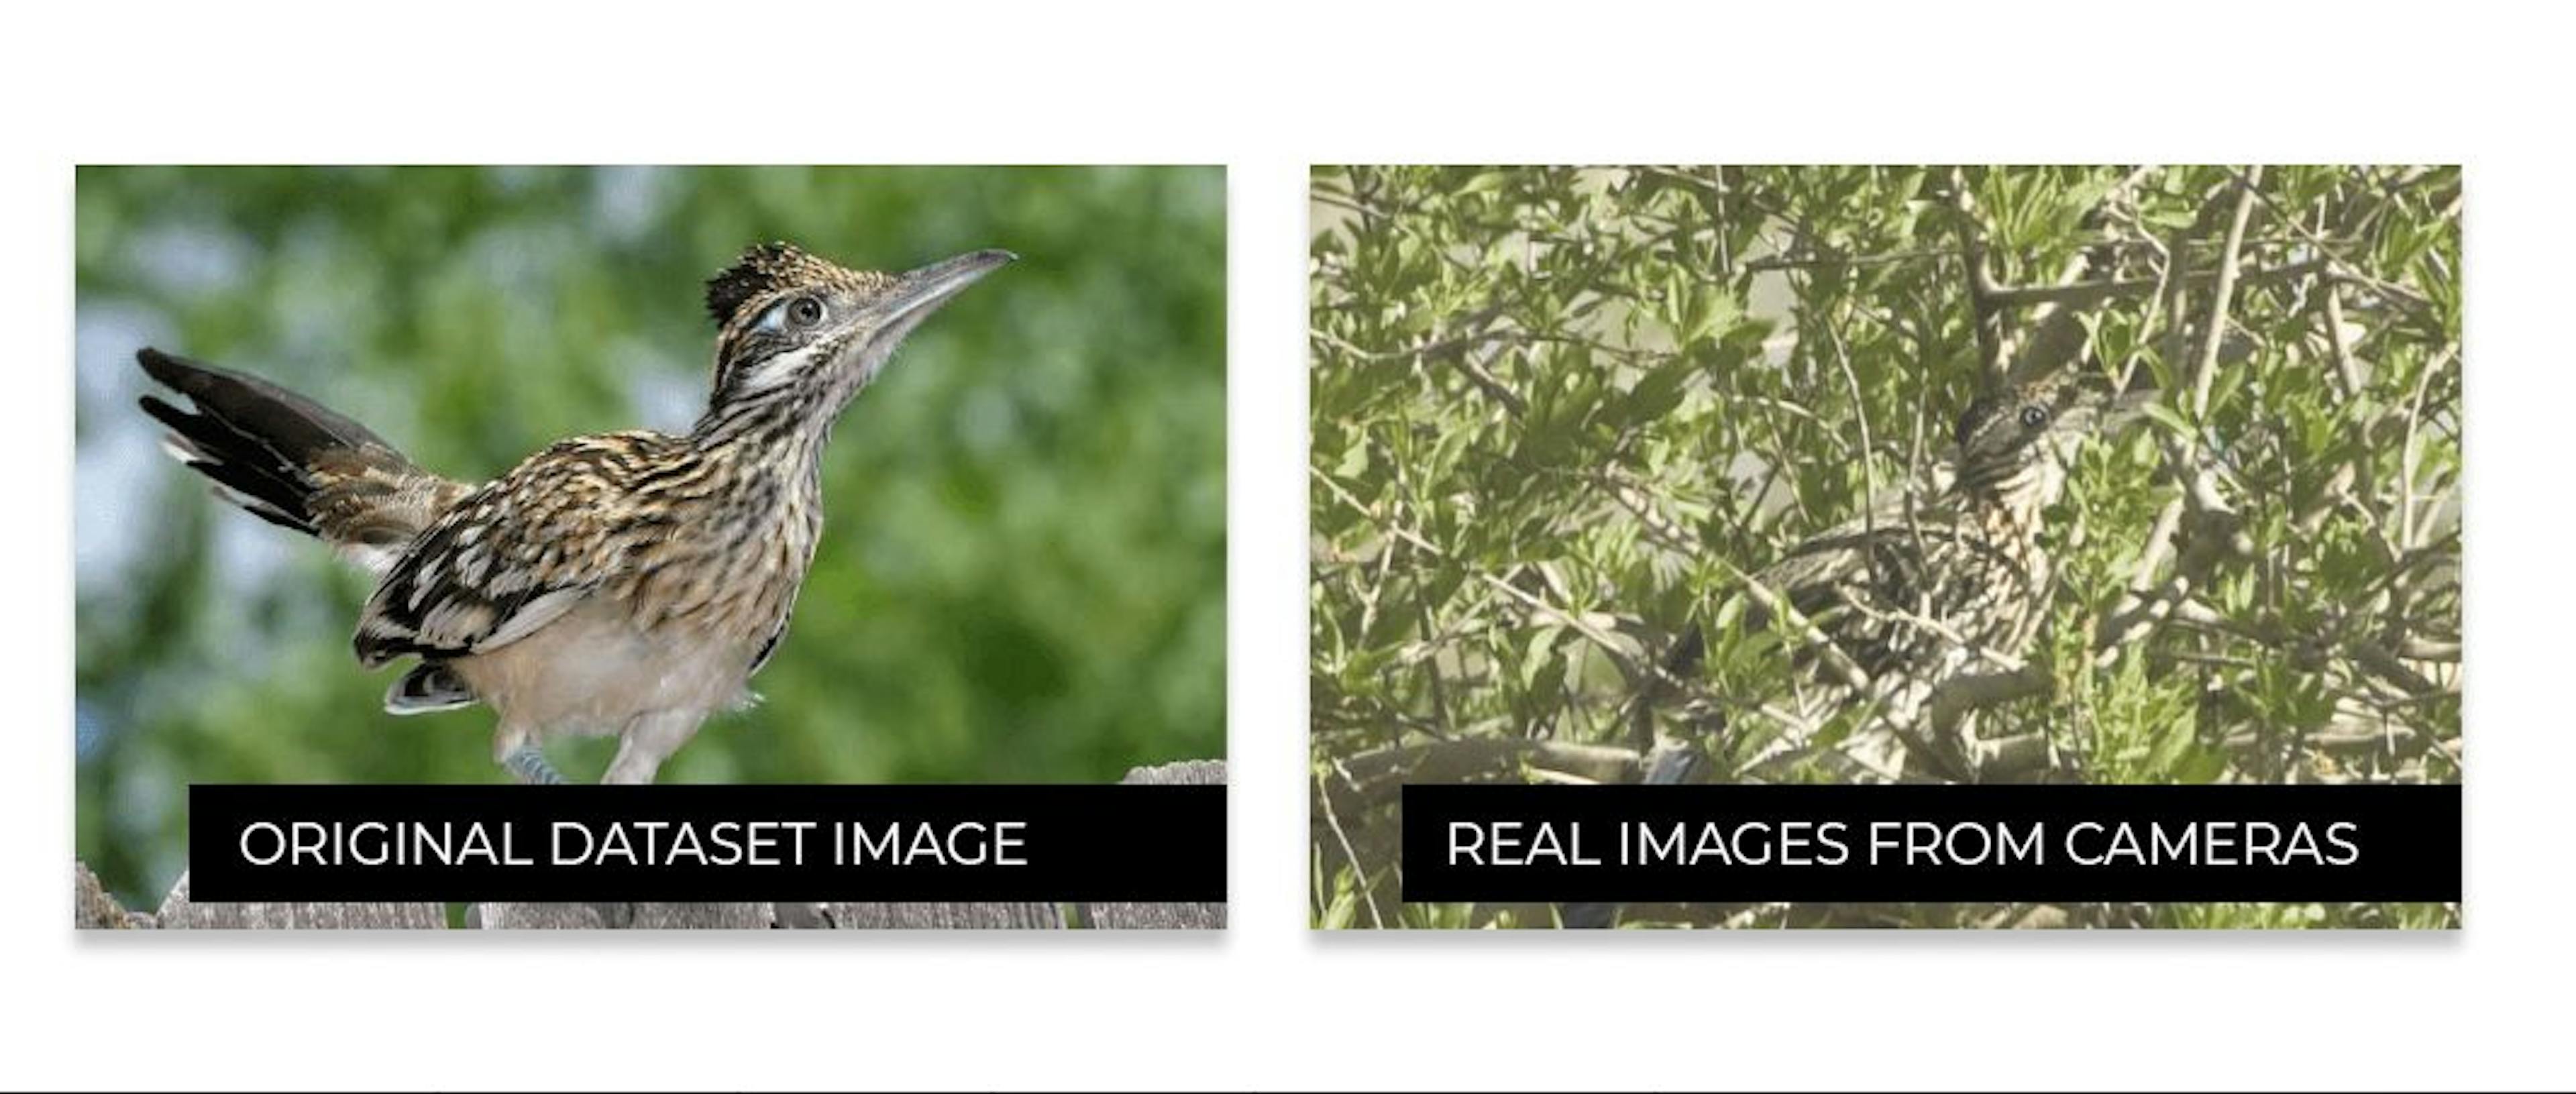 La différence entre l'apparence des oiseaux sur Internet et leur apparence dans la vie réelle